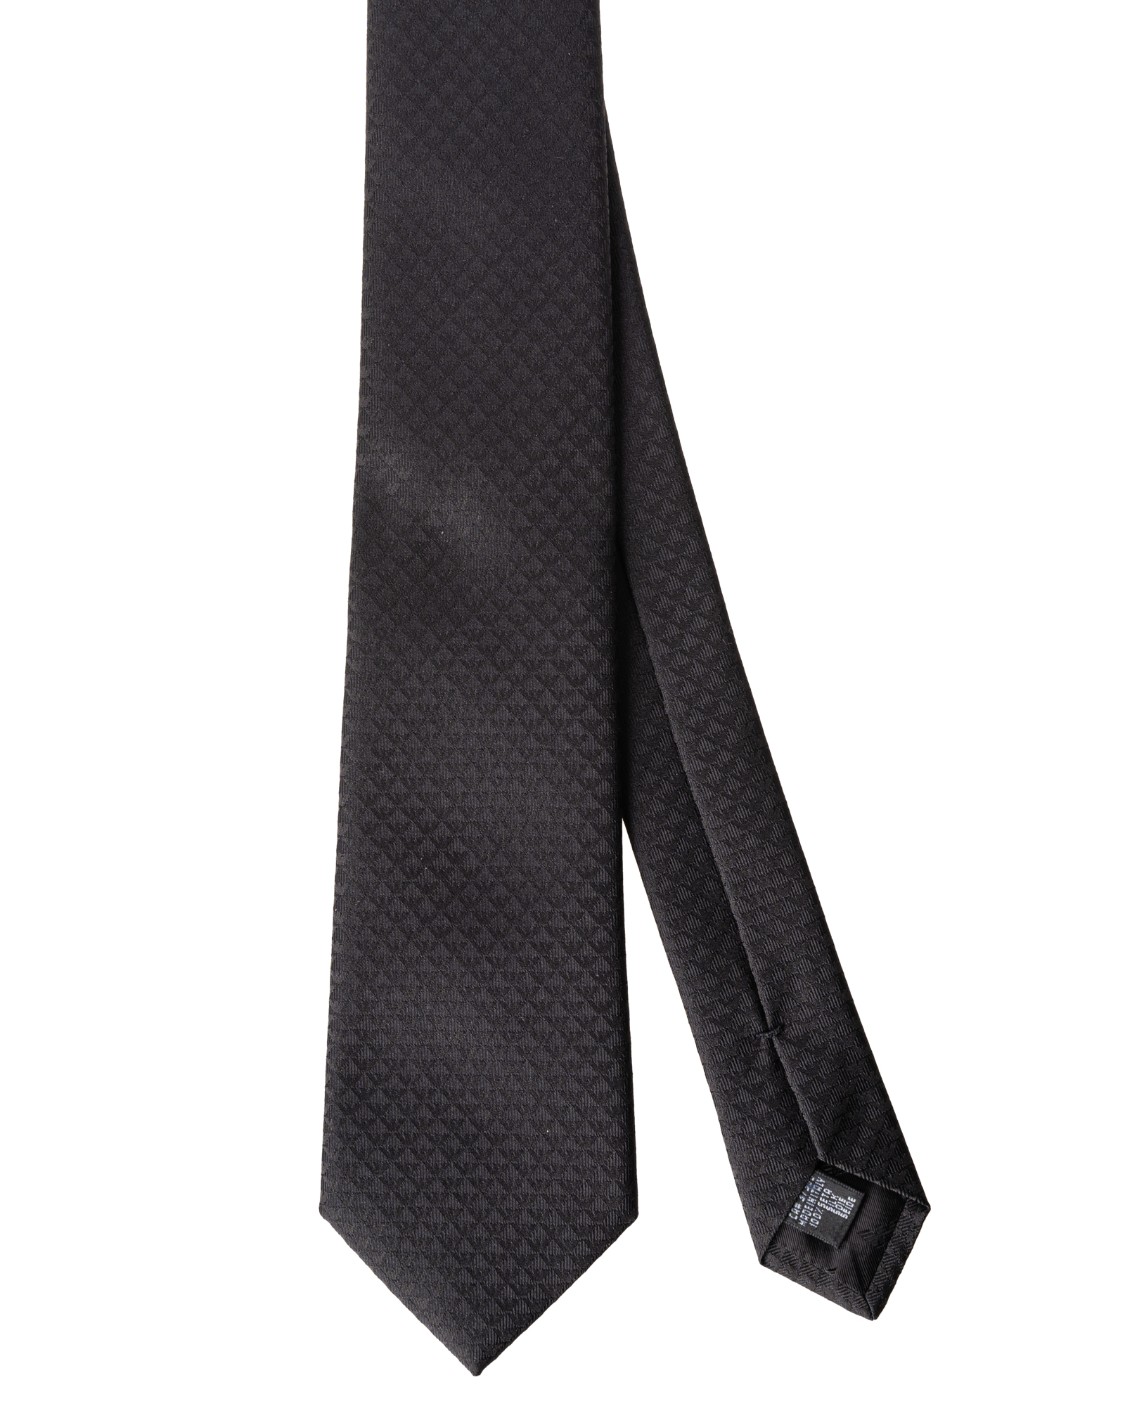 shop EMPORIO ARMANI  Cravatta: Emporio Armani cravatta in seta.
Pura seta con monogram jacquard. 
Composizione: 100% seta.
Fabbricato in Italia.. 340075 CC113-00020 number 7839145